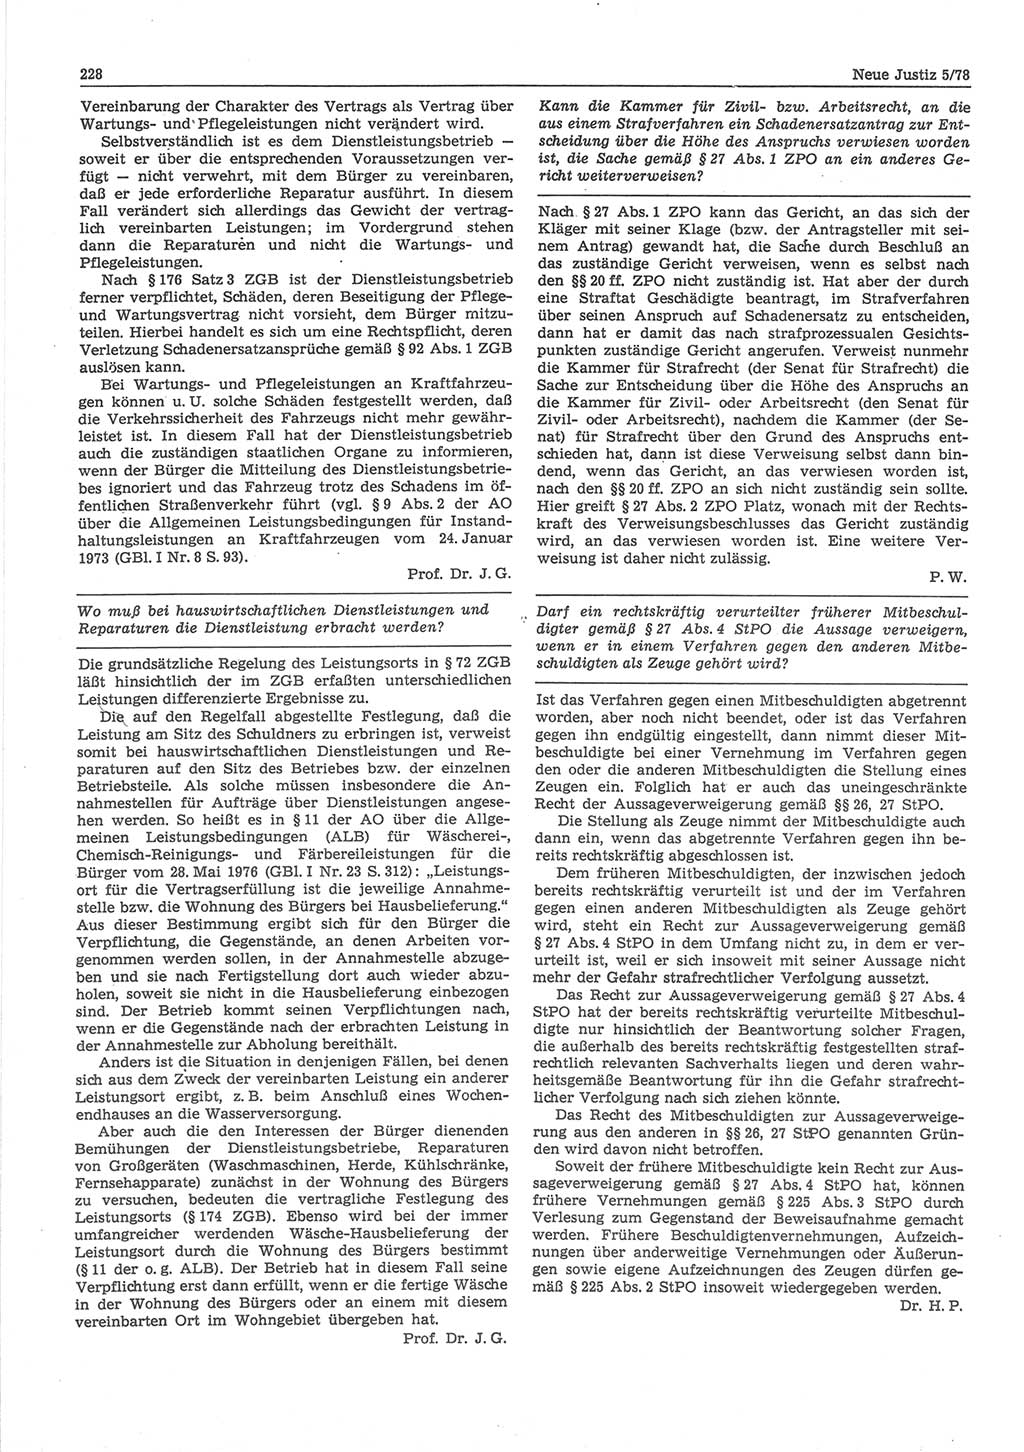 Neue Justiz (NJ), Zeitschrift für sozialistisches Recht und Gesetzlichkeit [Deutsche Demokratische Republik (DDR)], 32. Jahrgang 1978, Seite 228 (NJ DDR 1978, S. 228)